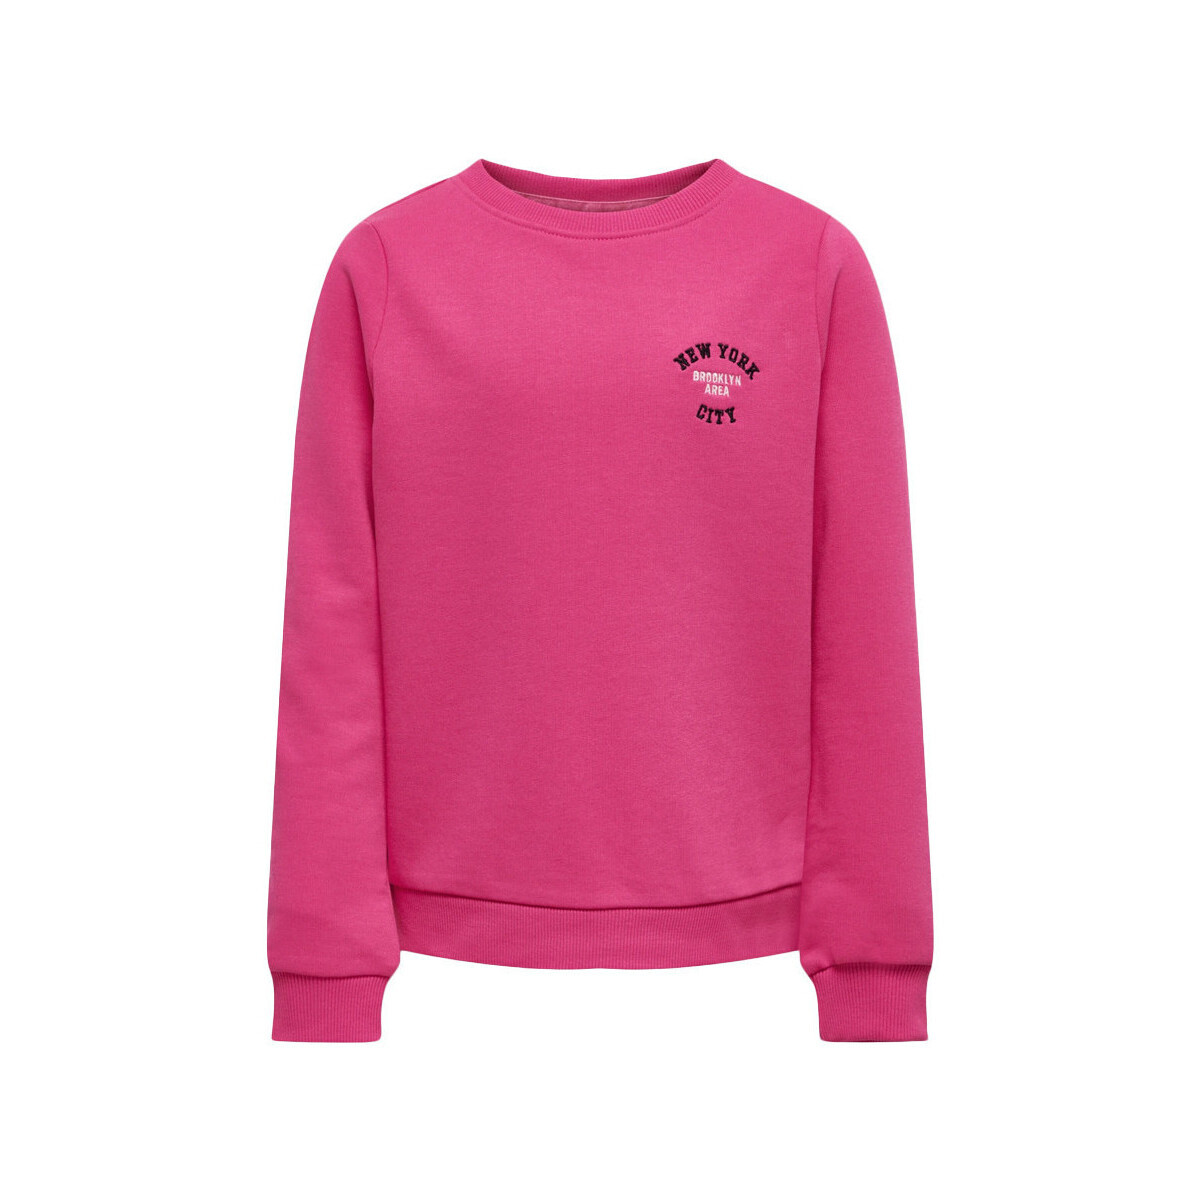 Kleidung Mädchen Sweatshirts Kids Only 15297681 Rosa